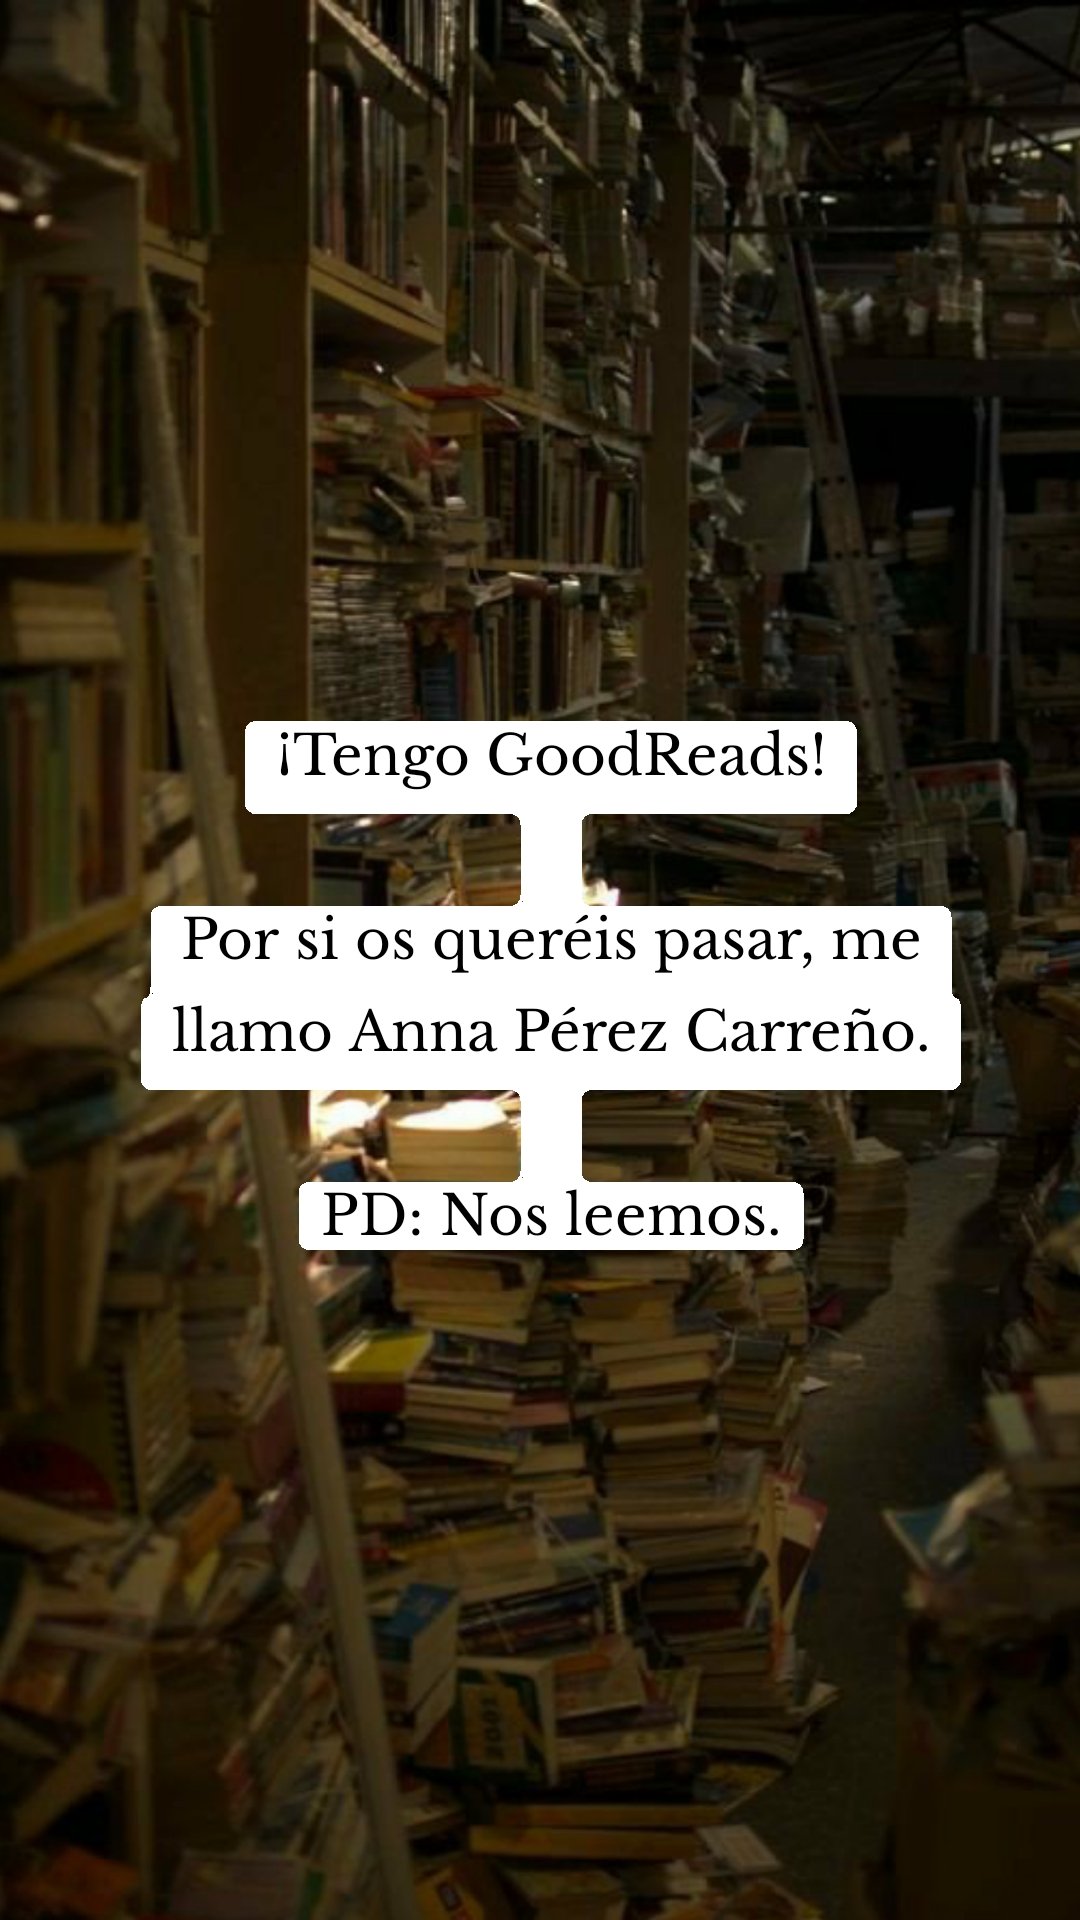 ¡Tengo GoodReads!Por si os queréis pasar, me llamo Anna Pérez Carreño.PD: Nos leemos.